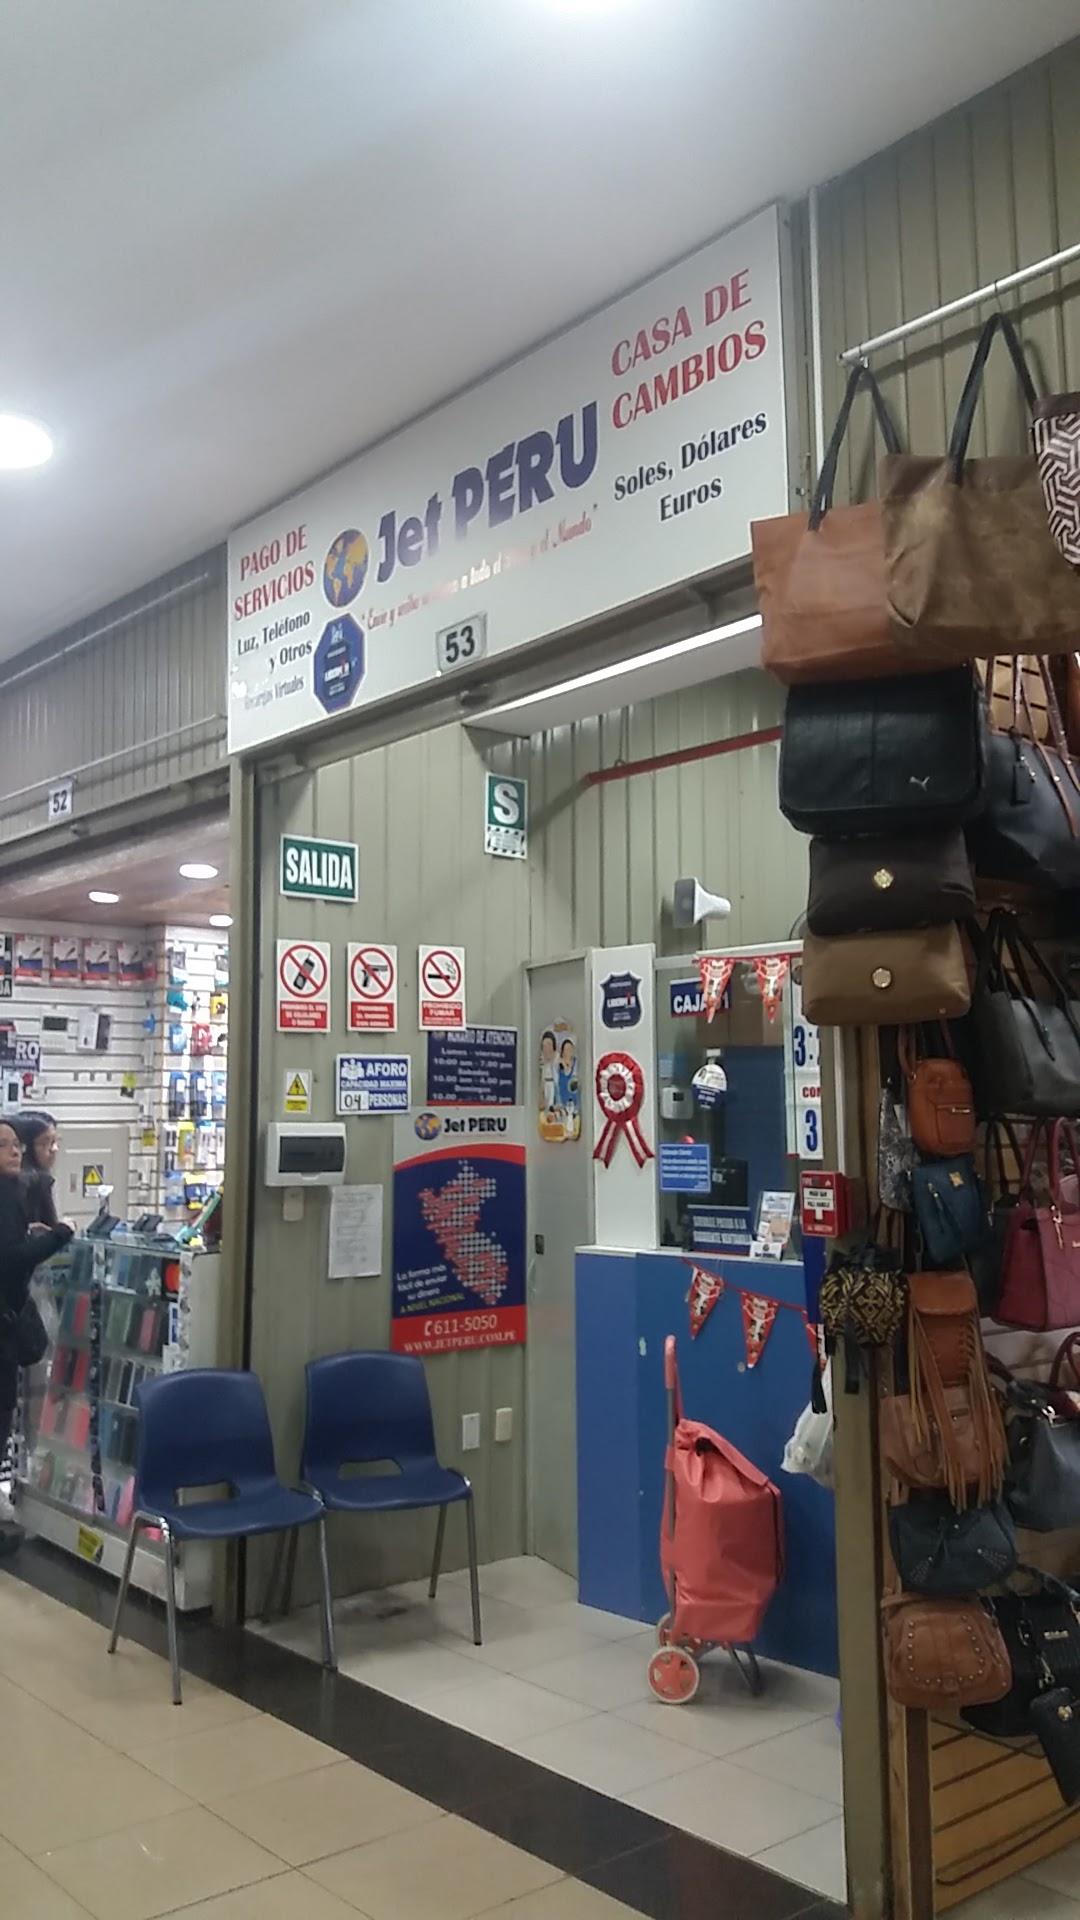 Jet Perú